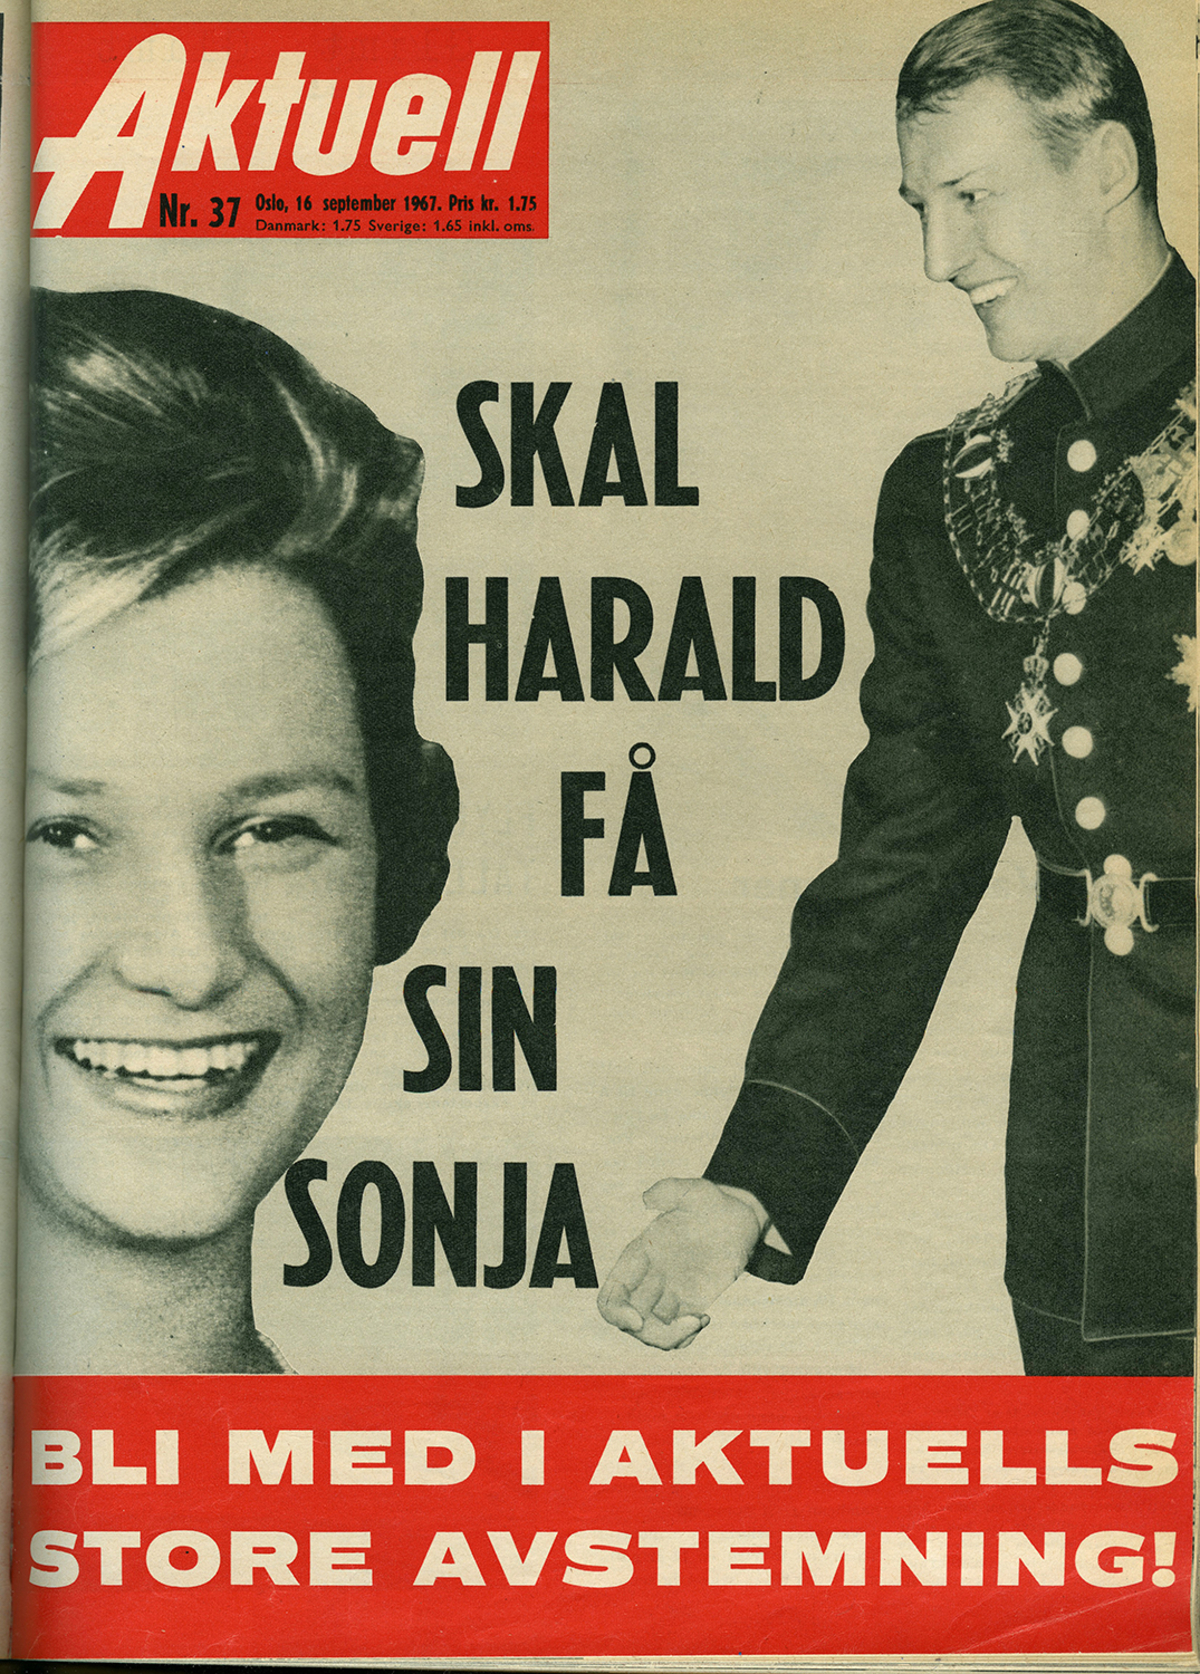 Ukeblad med bilde av Sonja Haraldsen og Kronprins Harald med tittelen "Skal Harald få sin Sonja" og undertittel "Bli med i Aktuells store avstemning!".